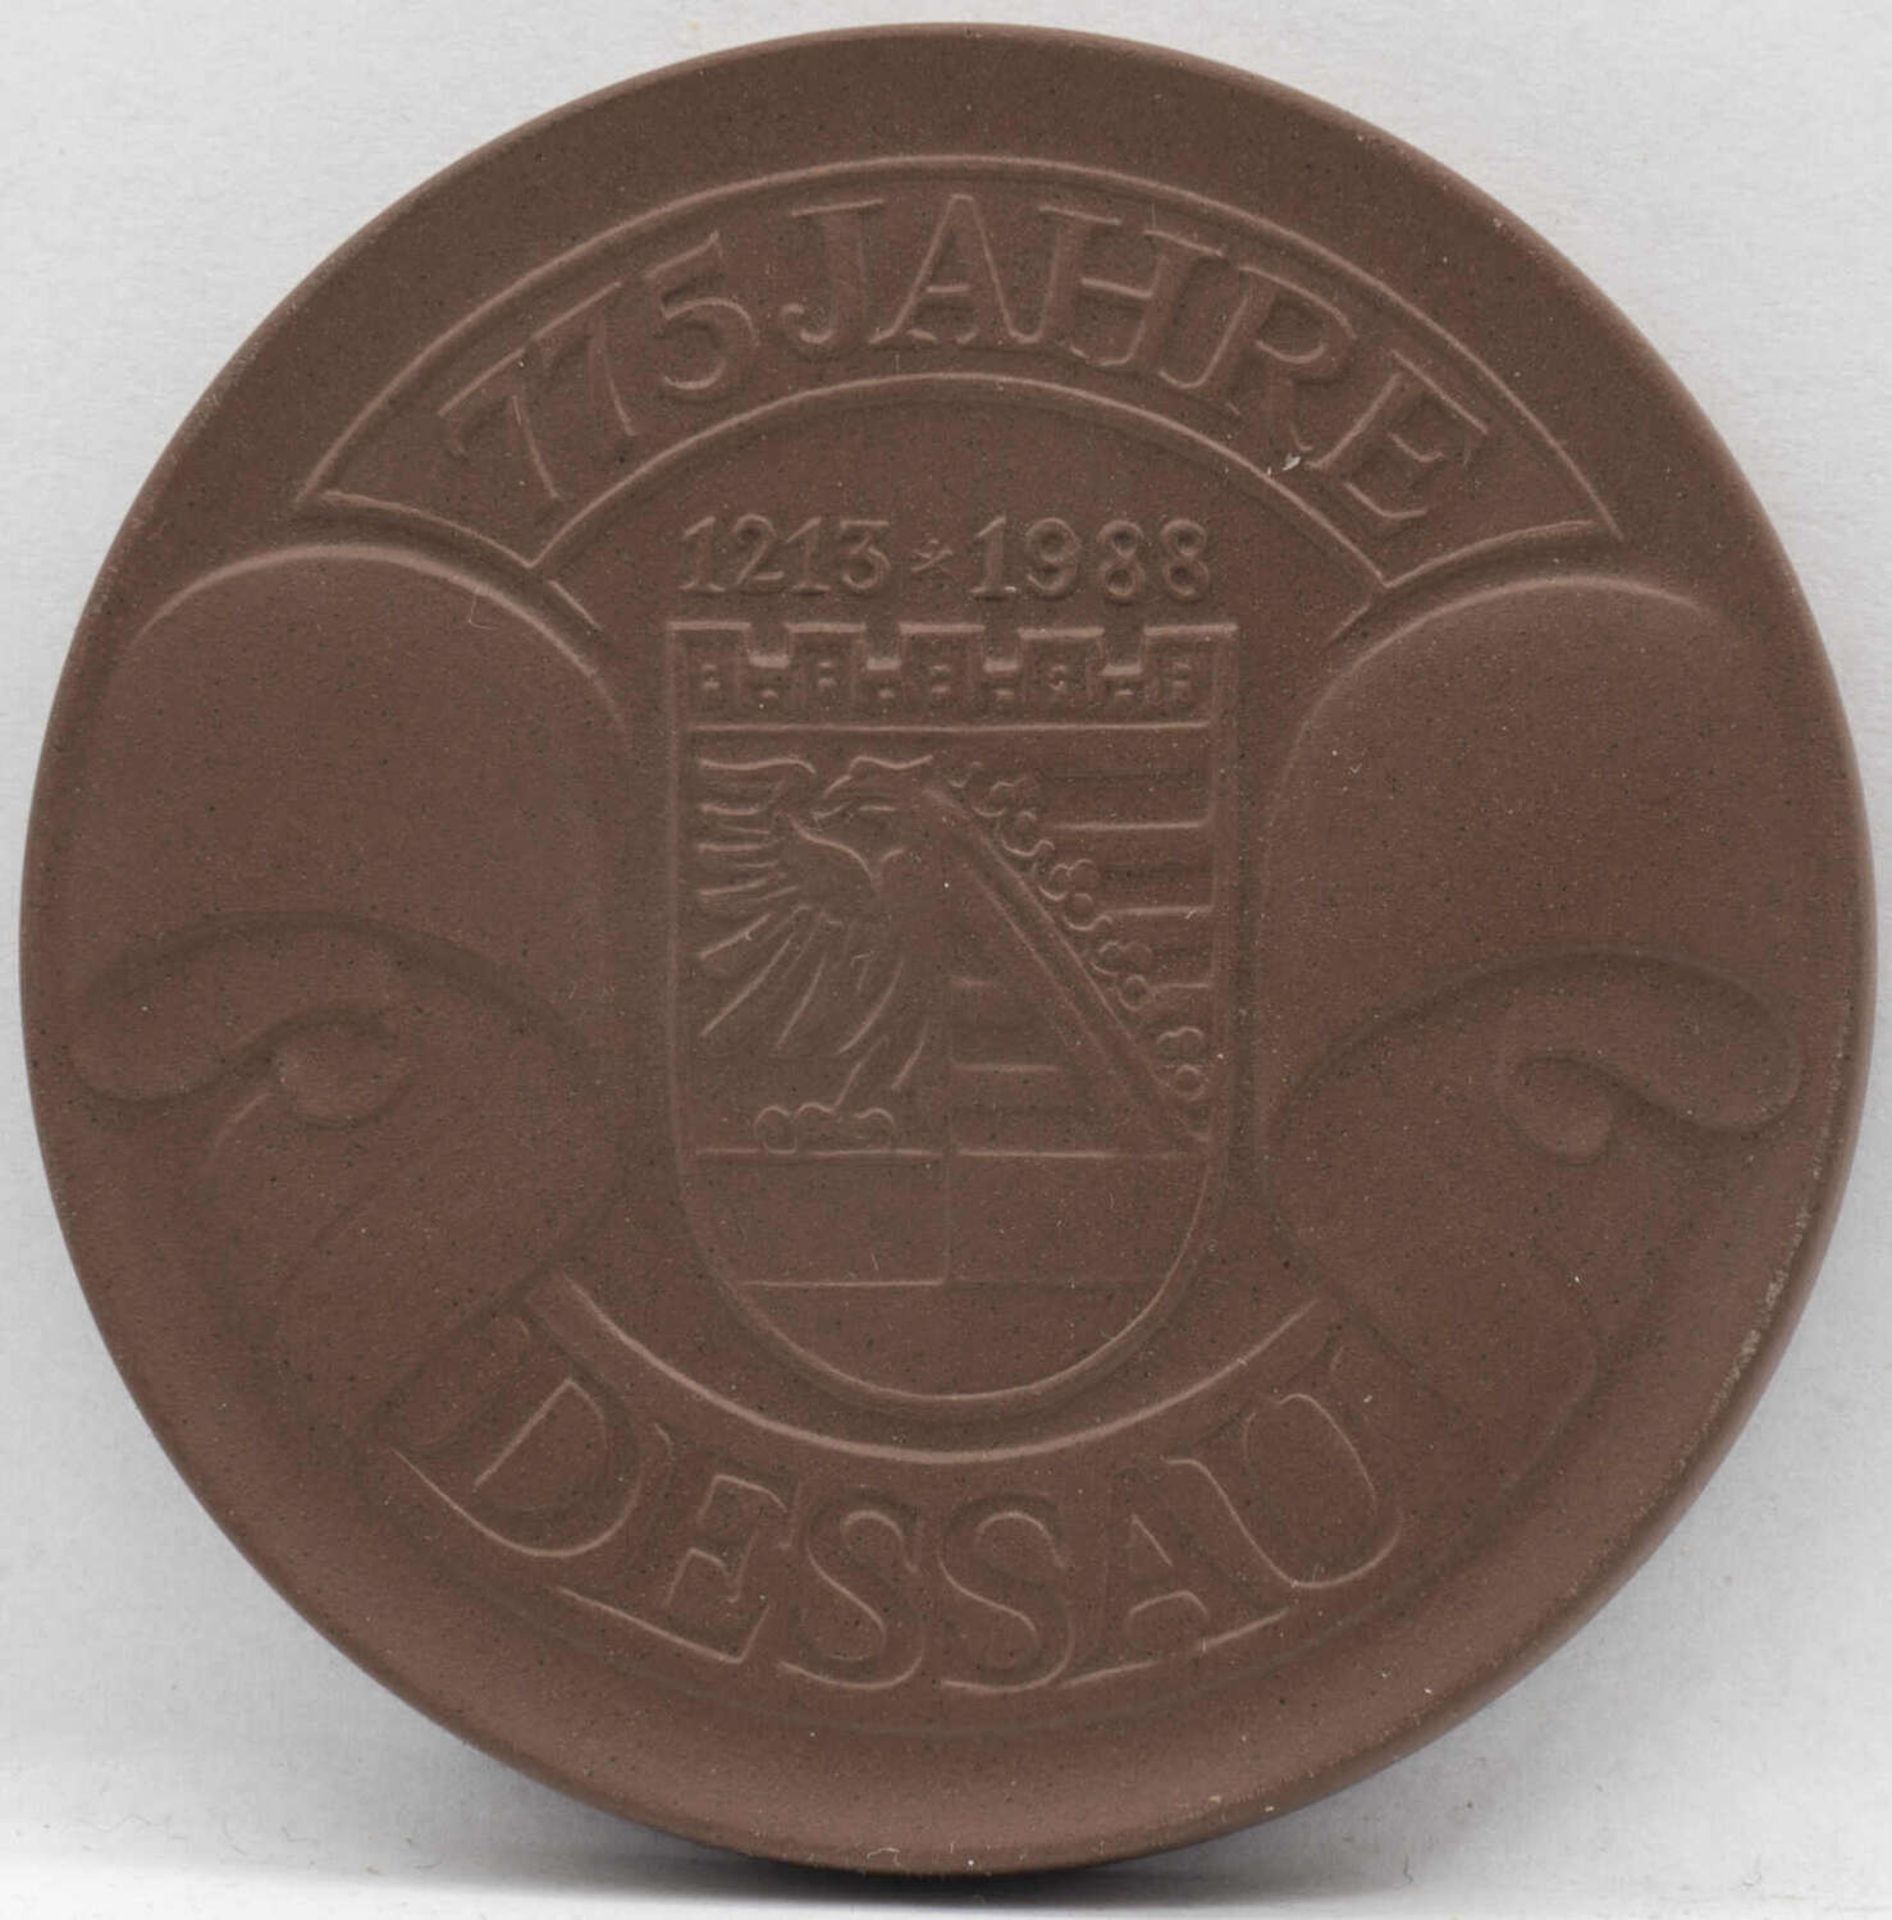 Meissen Porzellan - Medaille 775 Jahre Dessau. Durchmesser: ca. 67 mm. Erhaltung: VZ. Meissen